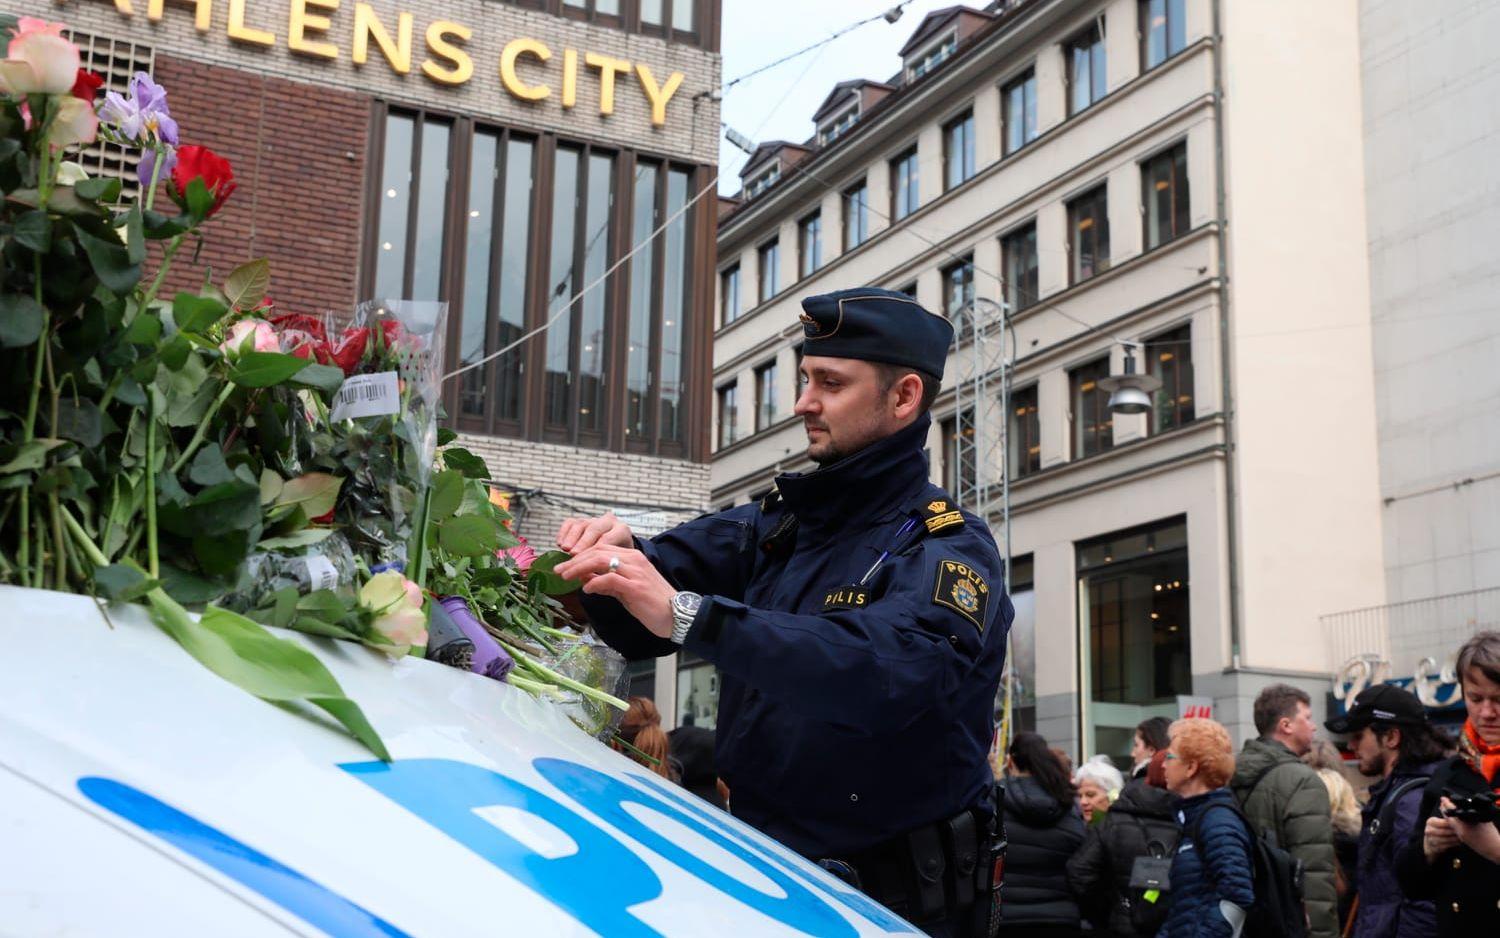 Christian placerar omsorgsfullt blommorna på kollegornas fordon. Bild: Per Wahlberg